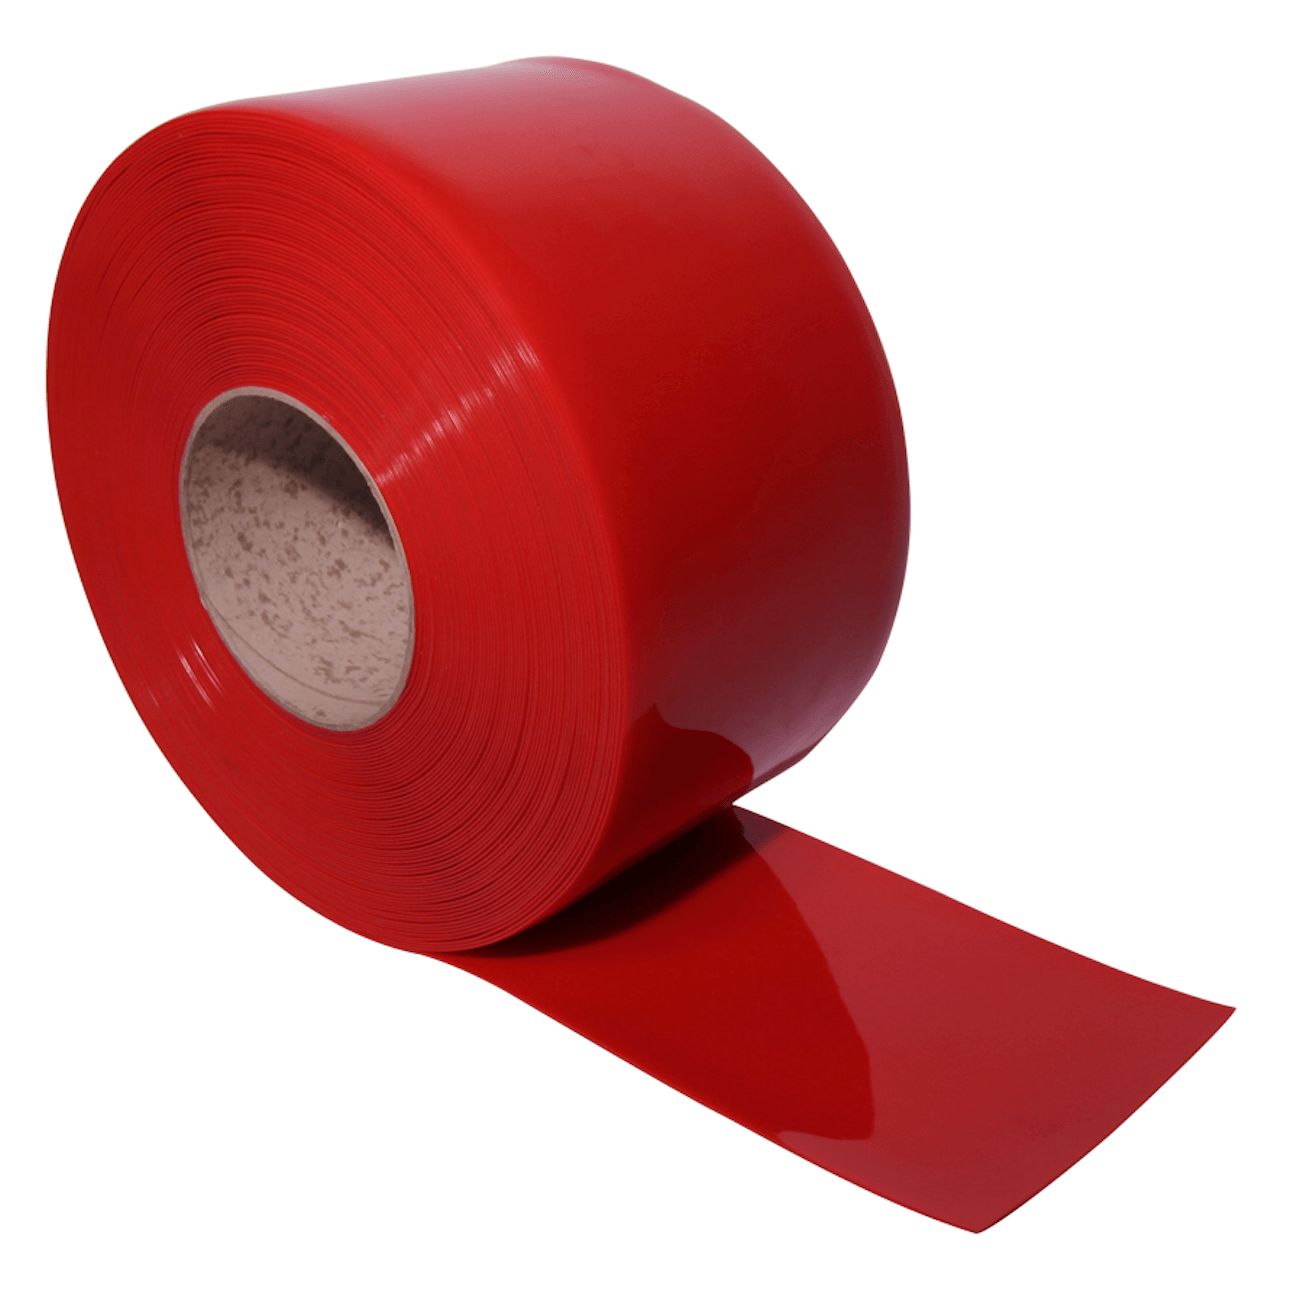 Полосовая пвх. ПВХ завеса морозостойкая (рифленая) 2x200. ПВХ завеса рифленая 2x200. ПВХ завеса красная 200 мм. Полосовая ПВХ завеса стандартная (красная) 200х2 мм.